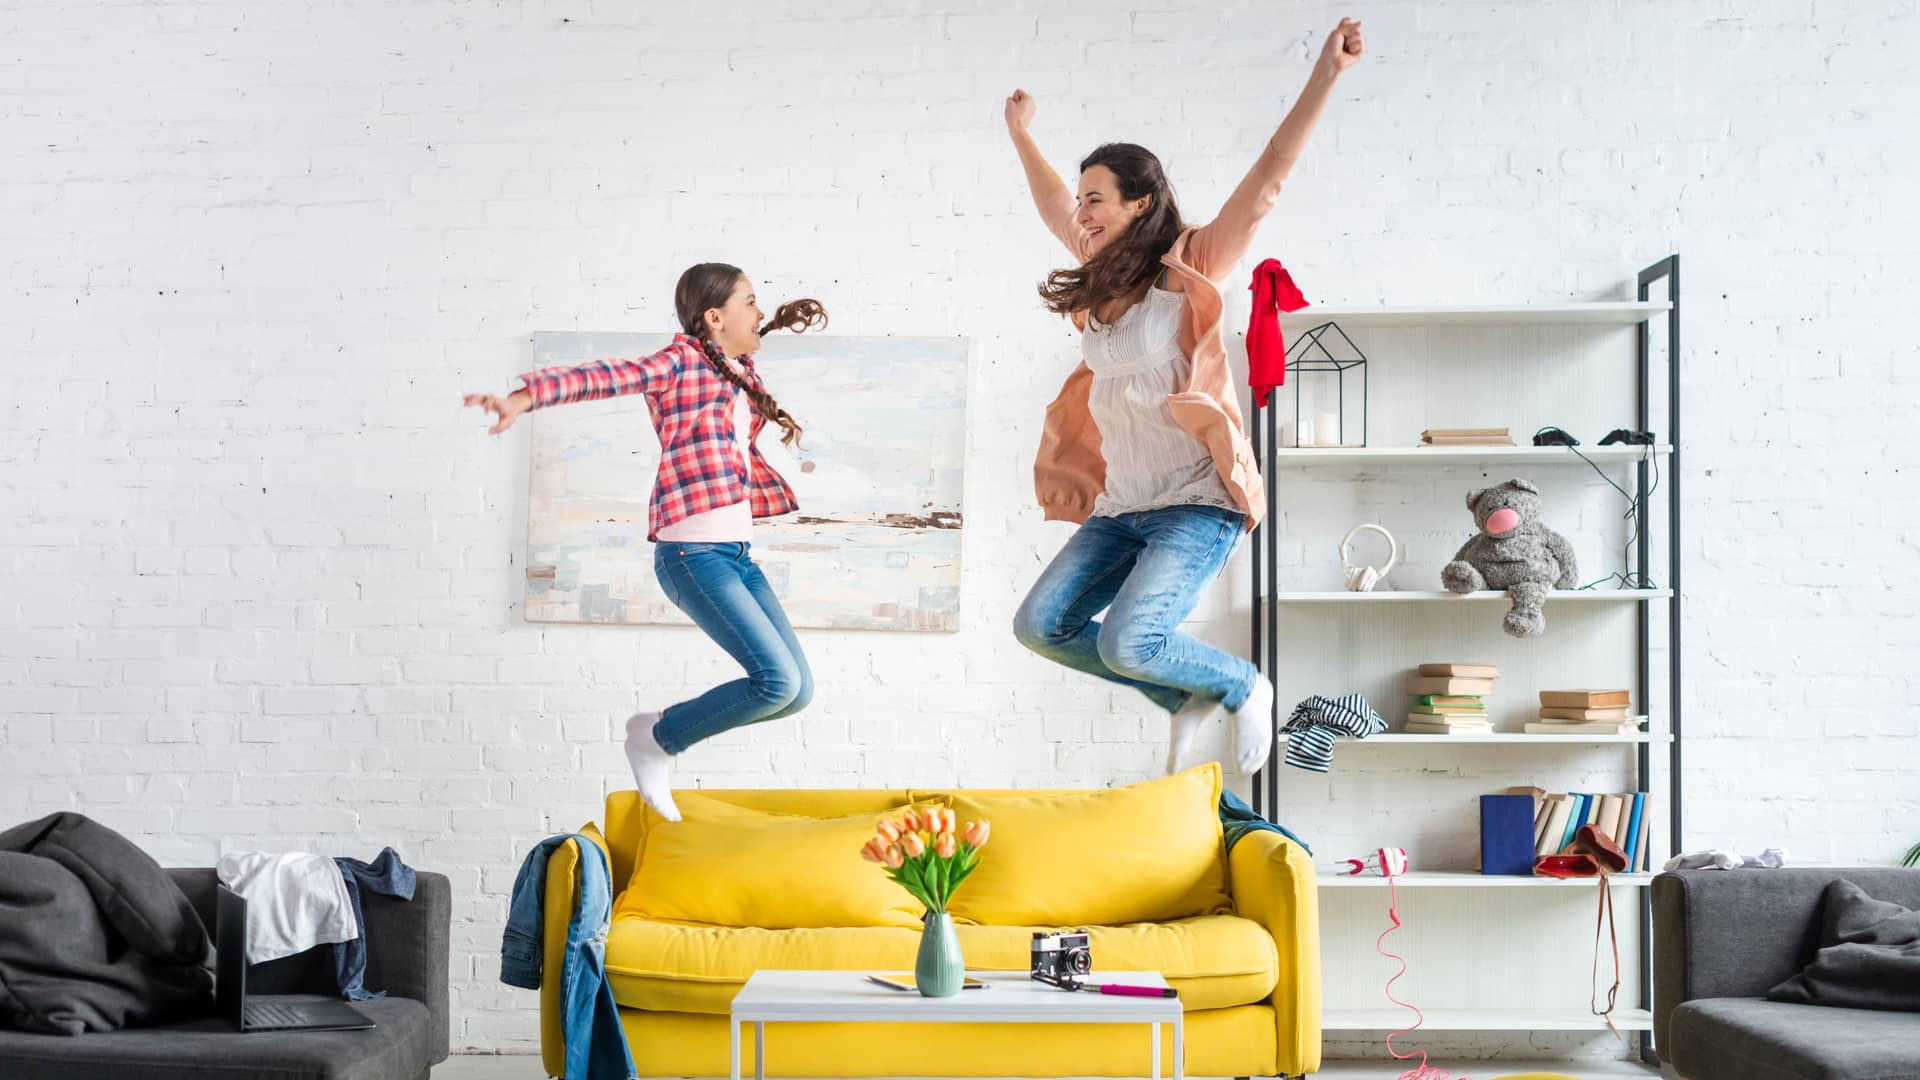 Madre e hija saltan en el sofá de alegría tras descubrir las ofertas de movistar en fibra. móviles y alarmas